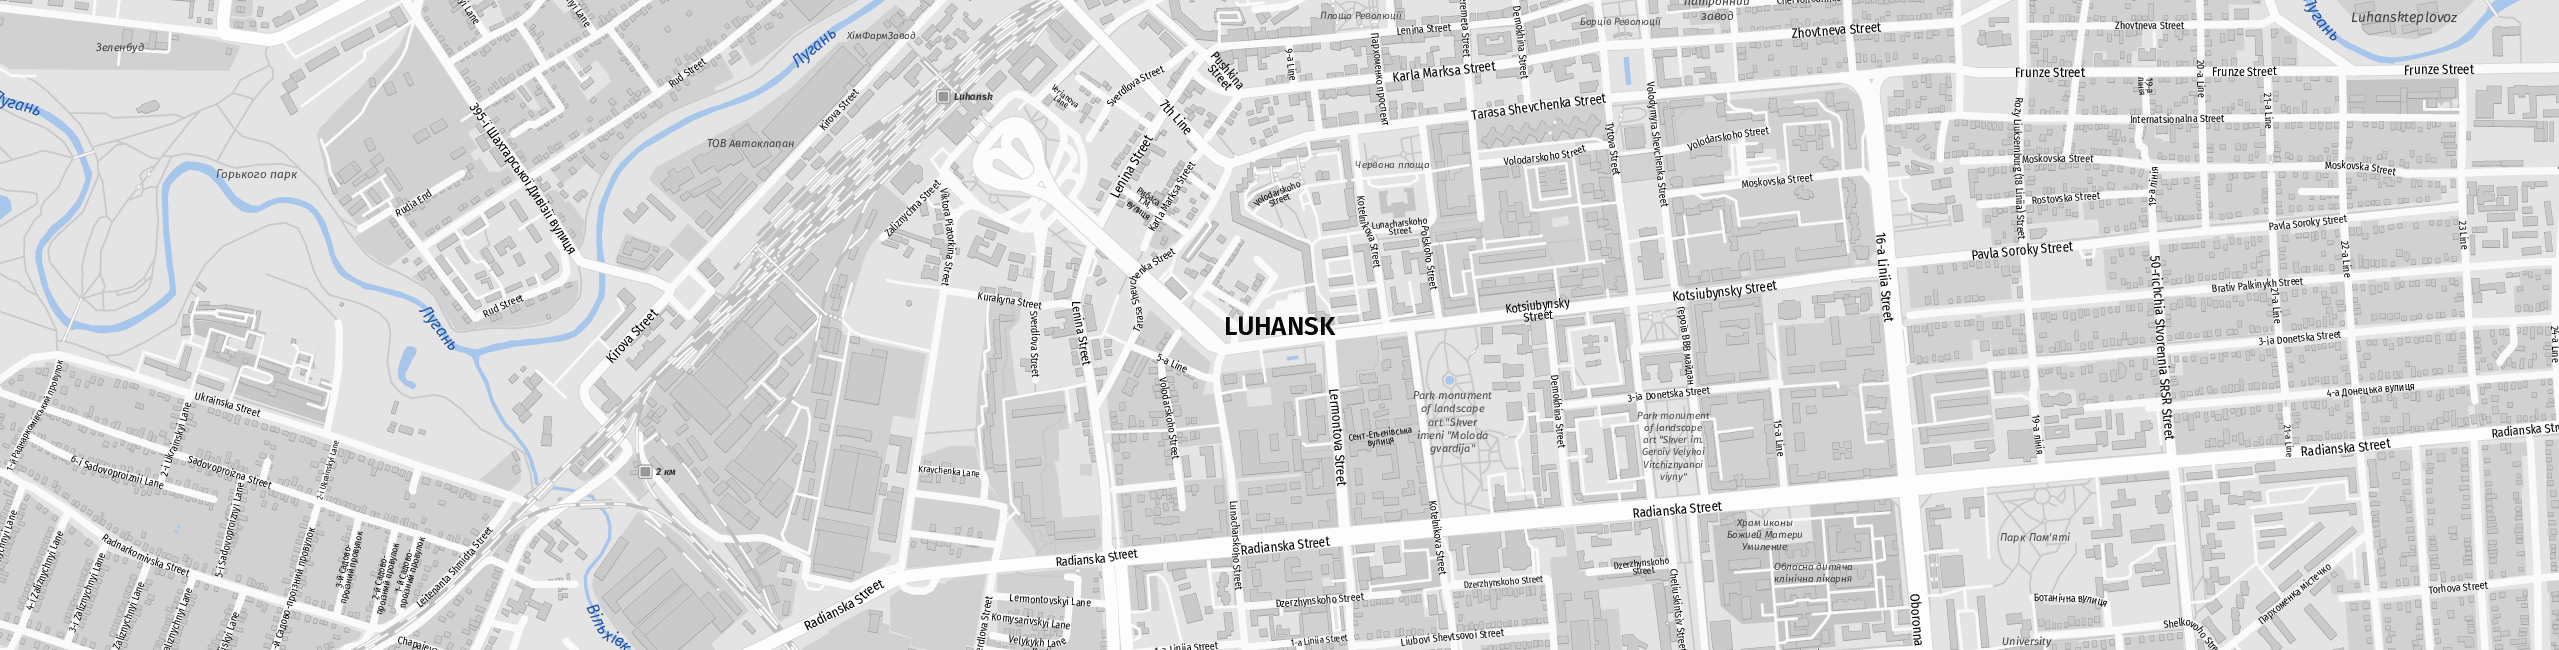 Stadtplan Luhansk zum Downloaden.